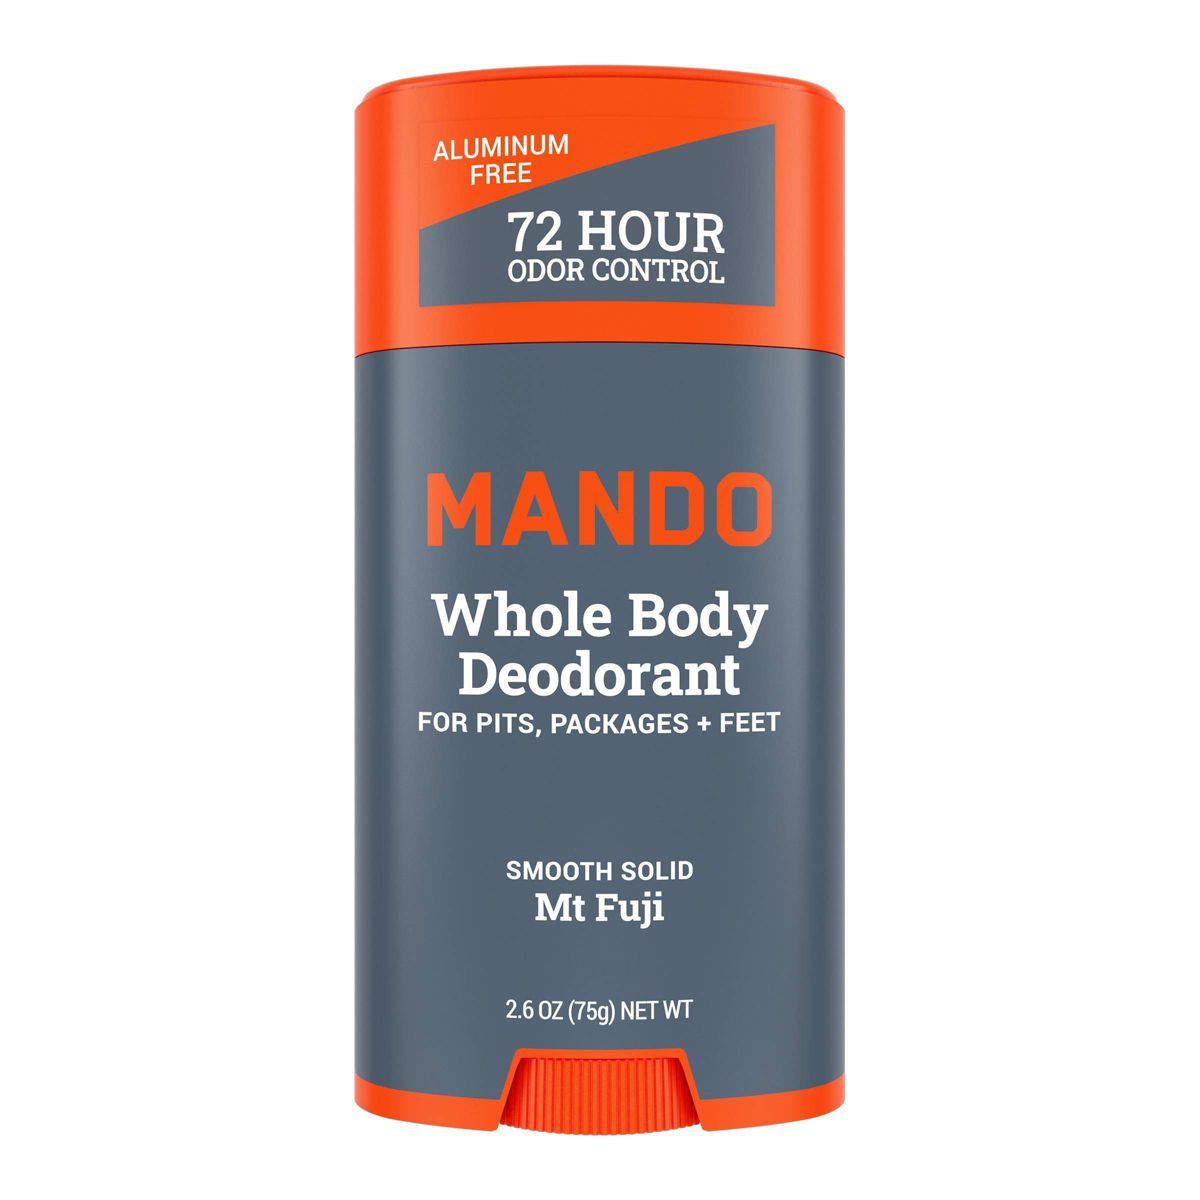 Mando Whole Body Deodorant - Smooth Solid Deodorant - Mt Fuji - Trial Size - 2.6oz | Target